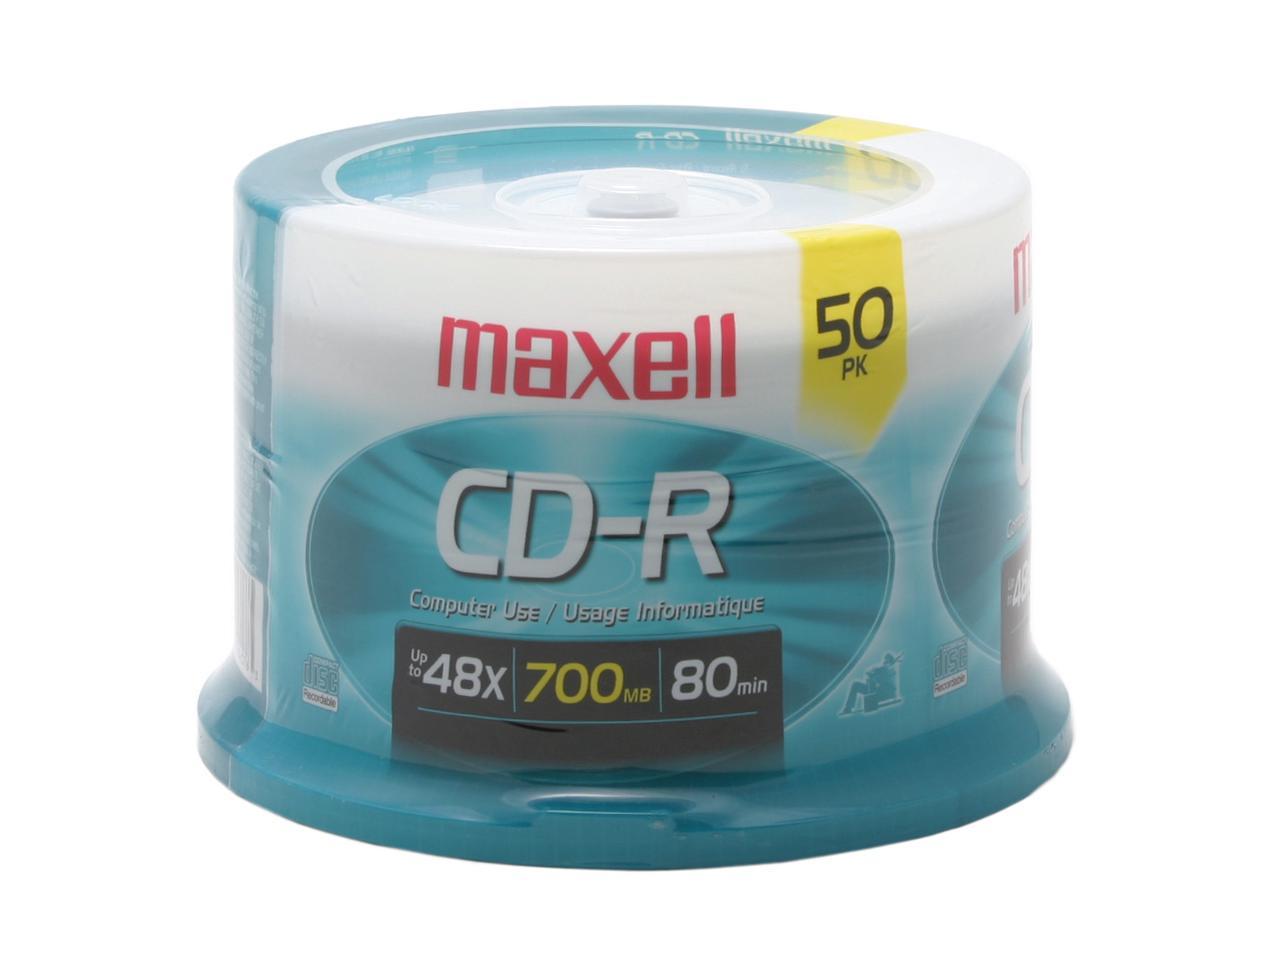 maxell 700MB 48X CD-R 50 Packs Disc Model 648250 | eBay